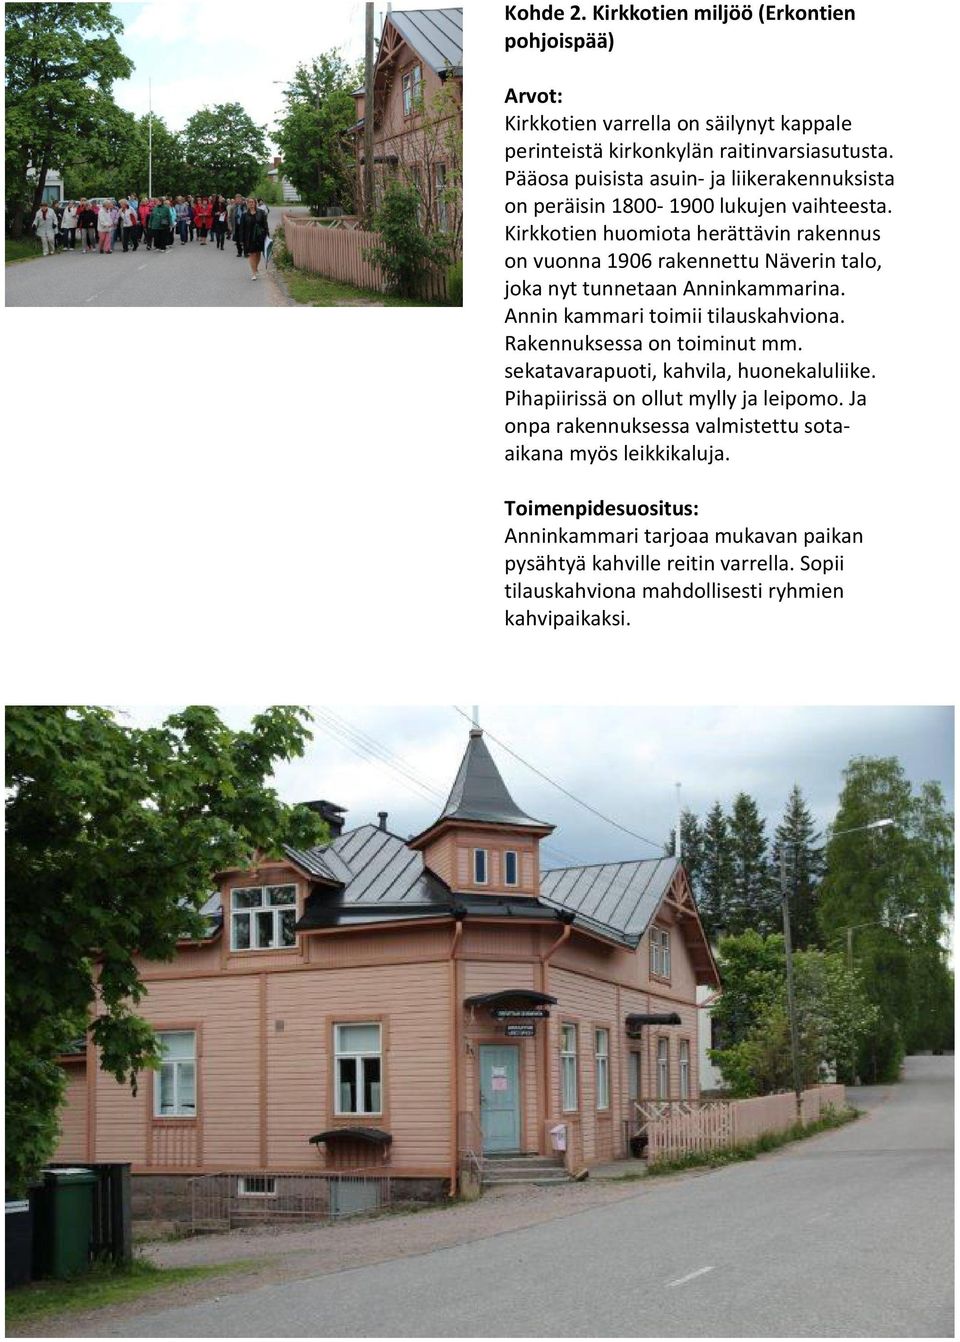 Kirkkotien huomiota herättävin rakennus on vuonna 1906 rakennettu Näverin talo, joka nyt tunnetaan Anninkammarina. Annin kammari toimii tilauskahviona.